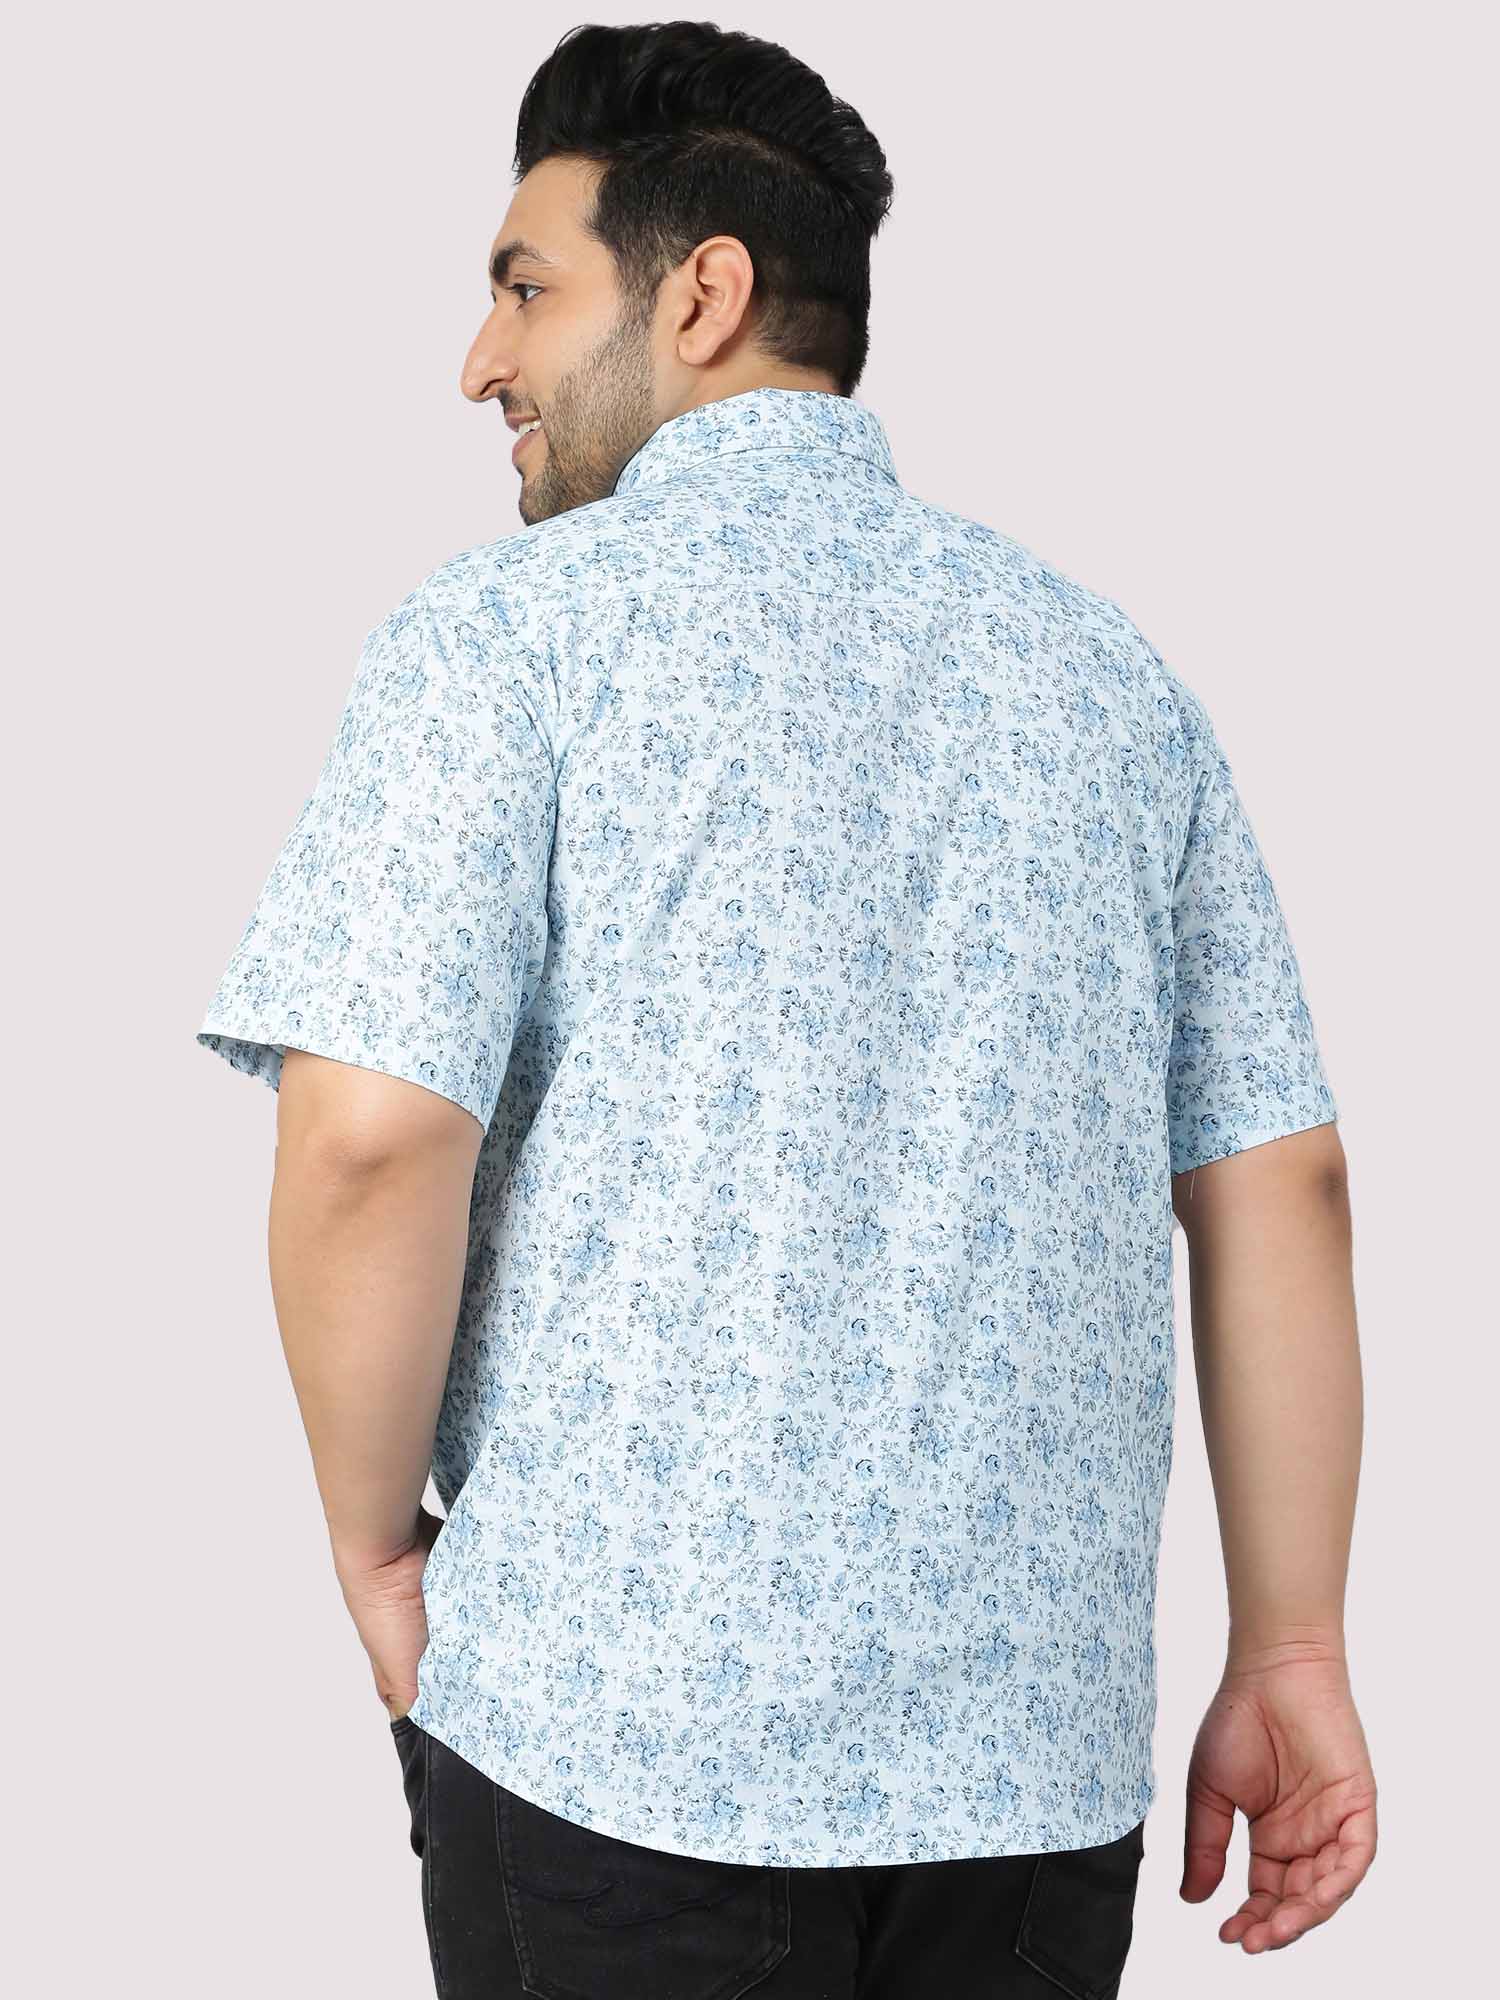 Sky Blue Floral Print Half Sleeve Shirt Men's Plus Size